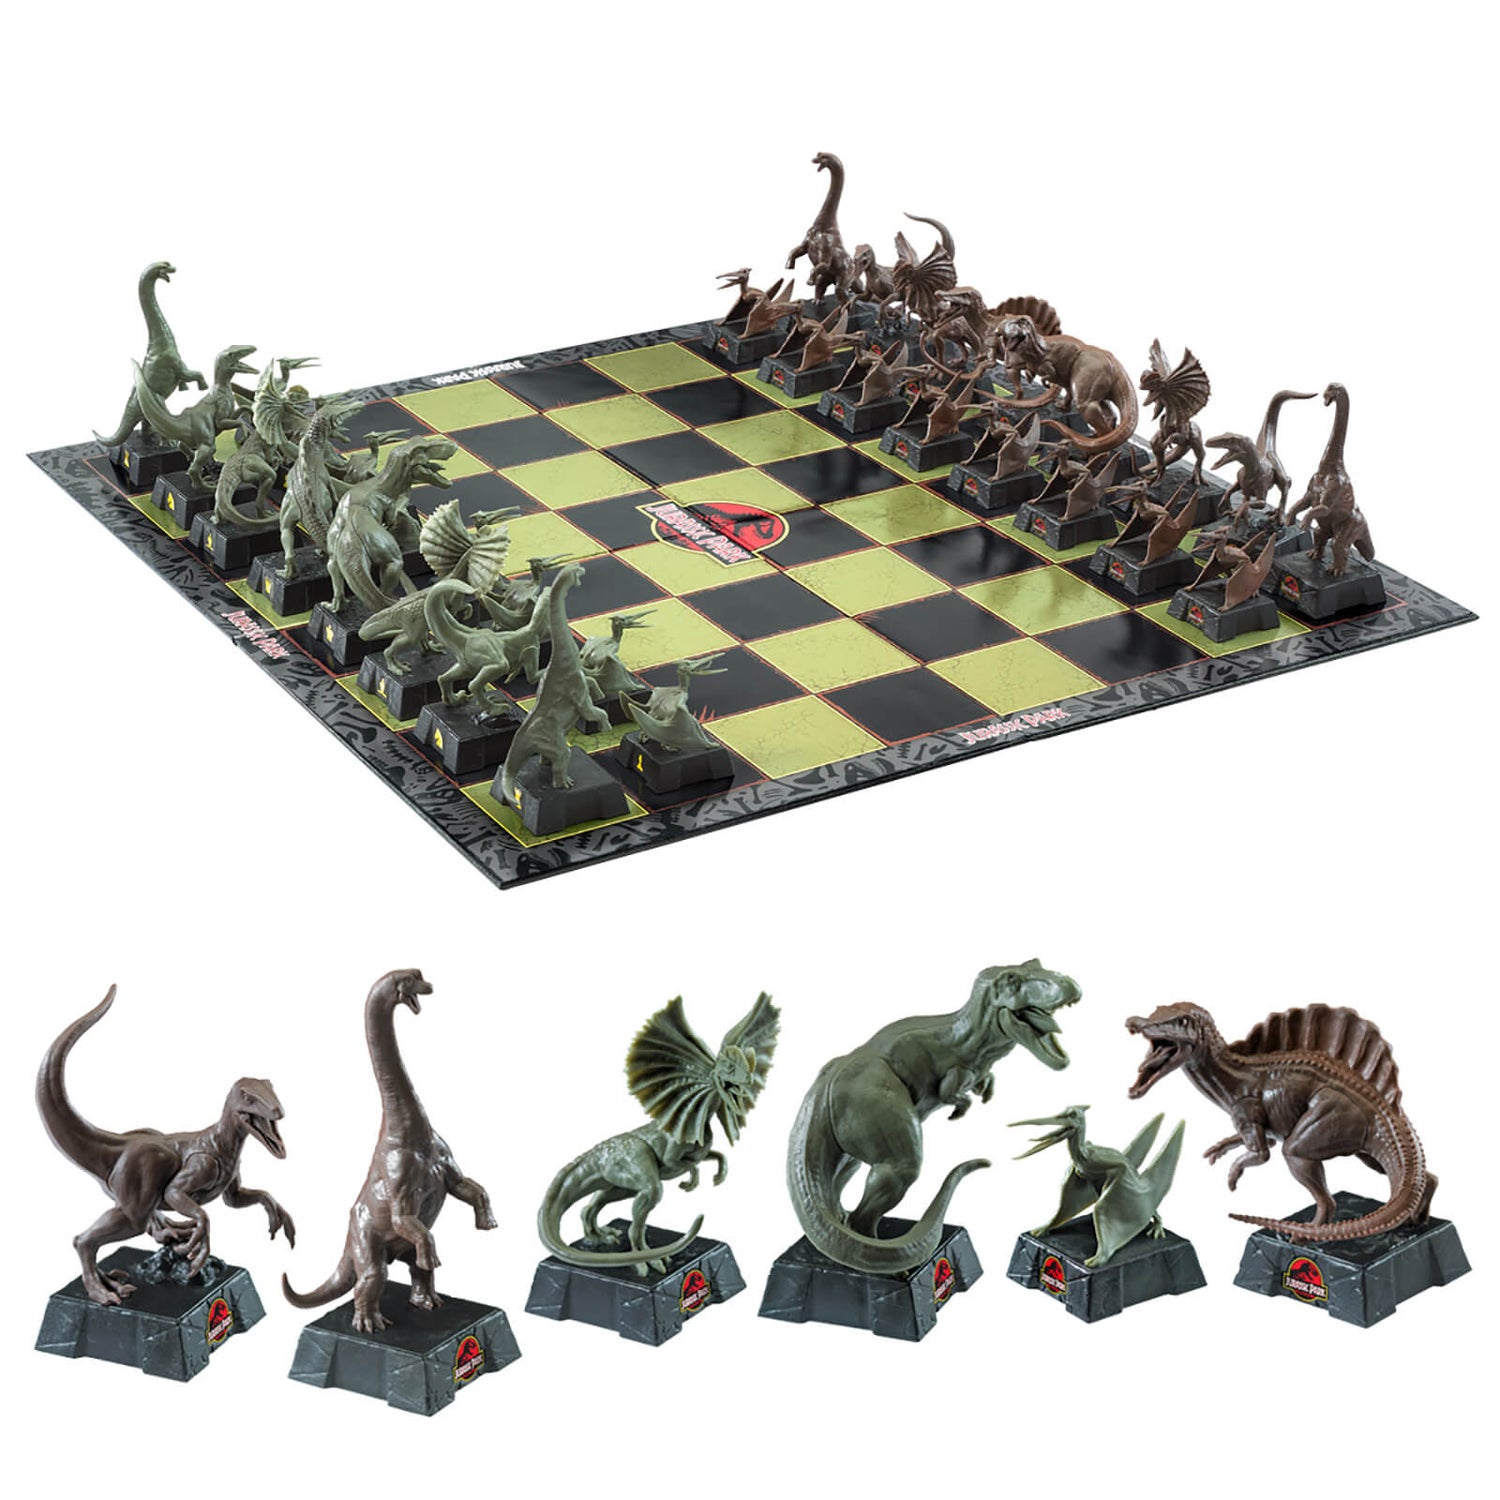 Die Noble Collection Jurassic Park Schachspiel Merchandise Zavvi.de